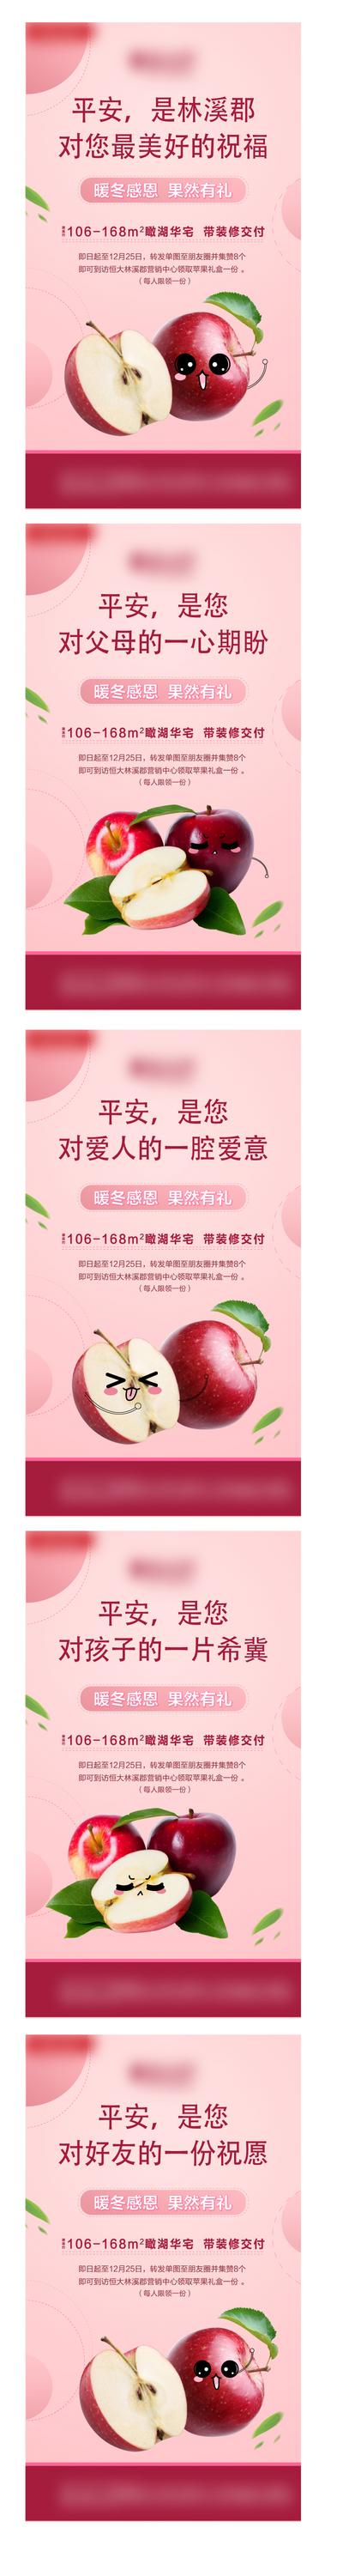 【南门网】海报 房地产 暖场活动 集赞 感恩 苹果 表情